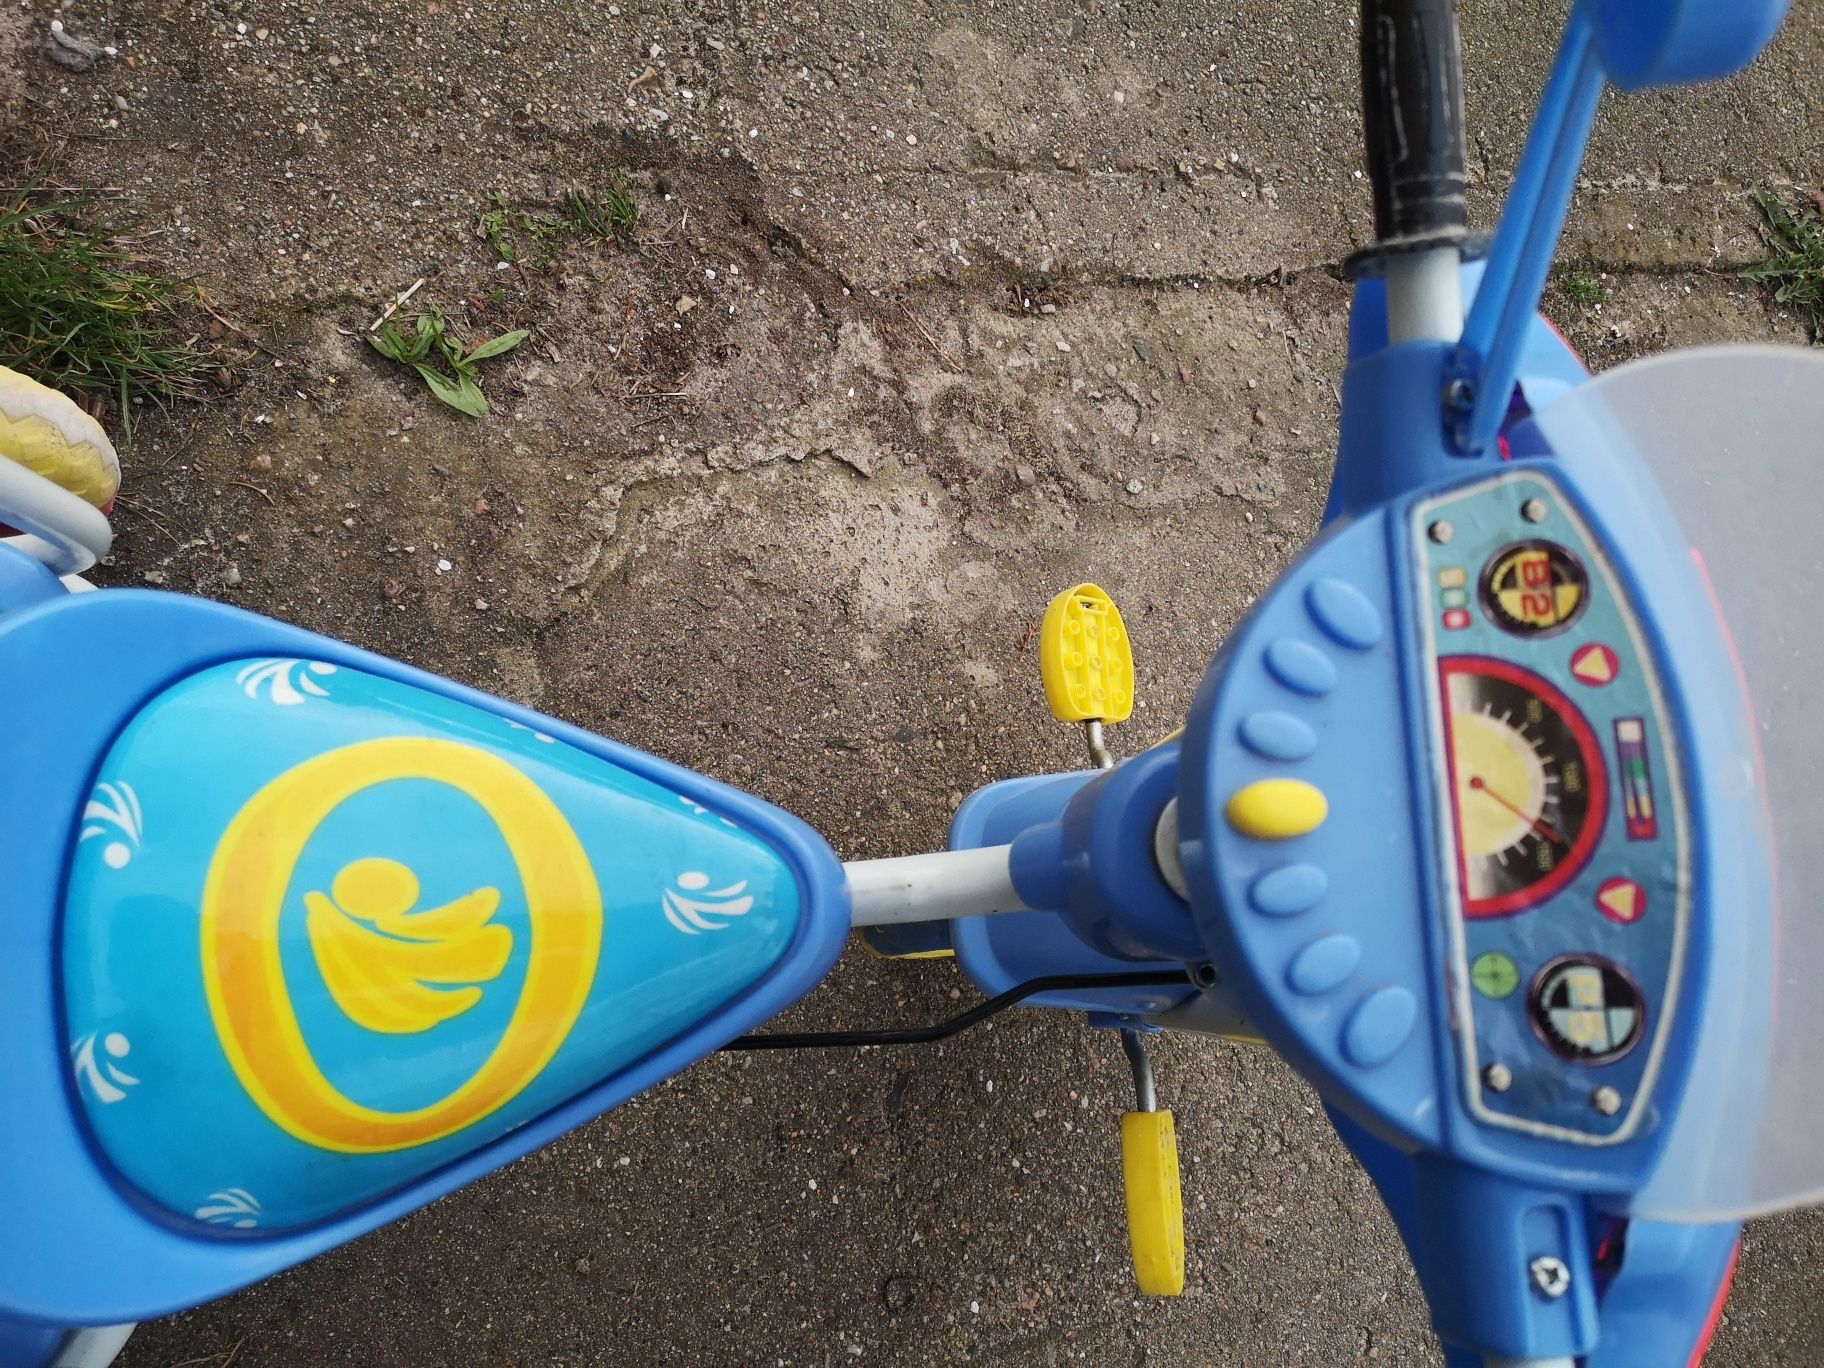 Rowerek trójkołowy dla dziecka